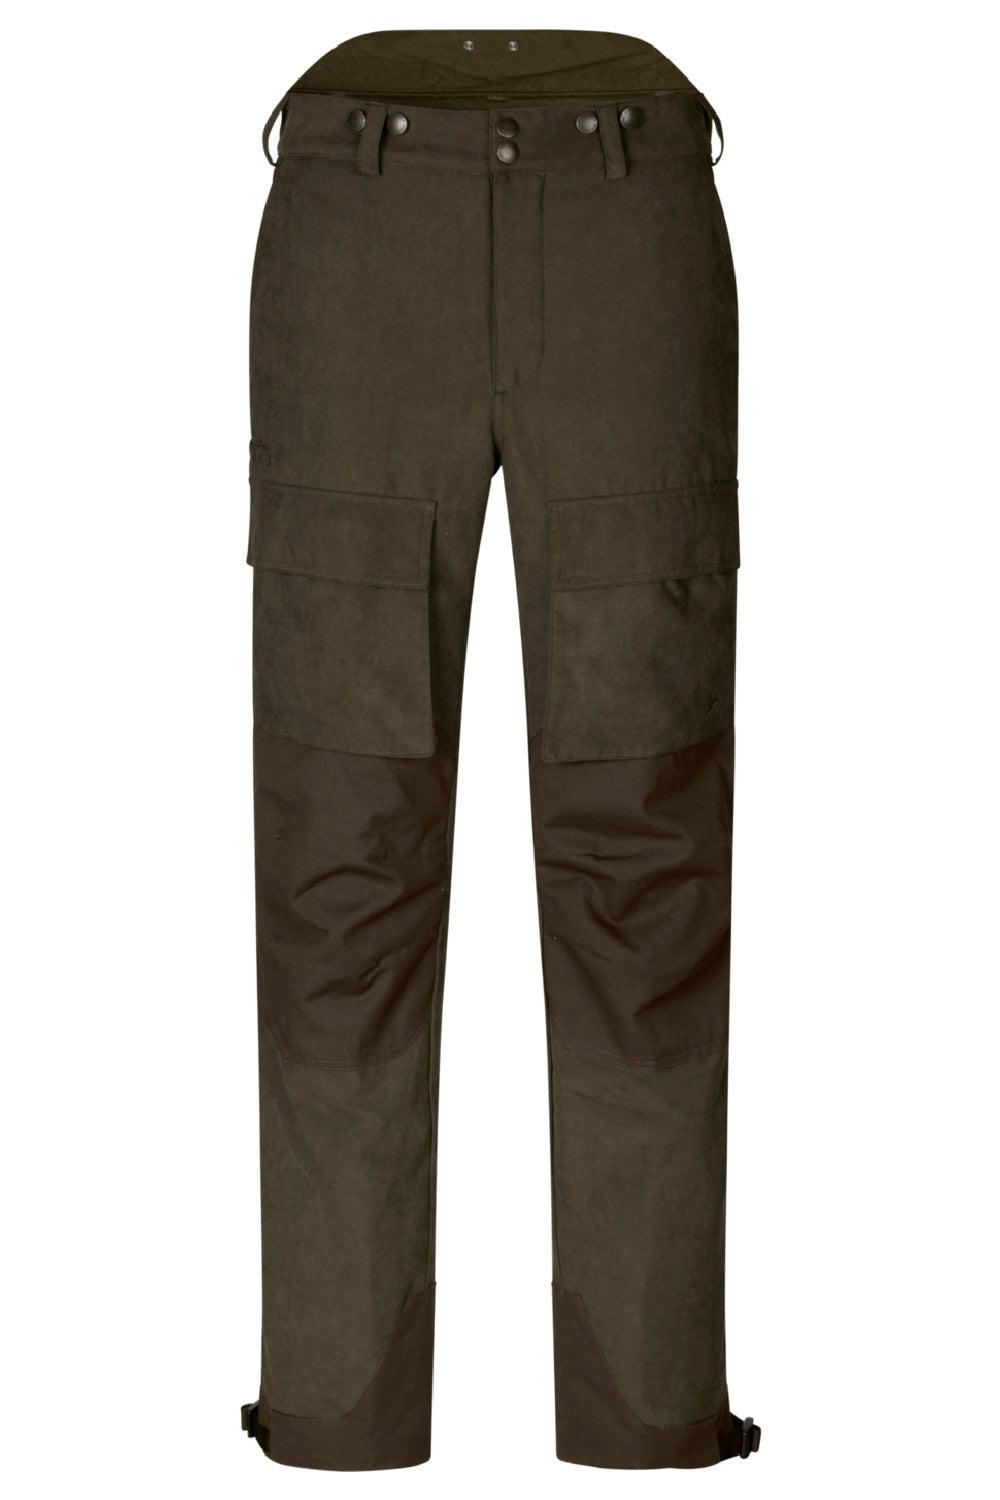 Seeland Helt II Waterproof Trousers- GRIZZLY BROWN